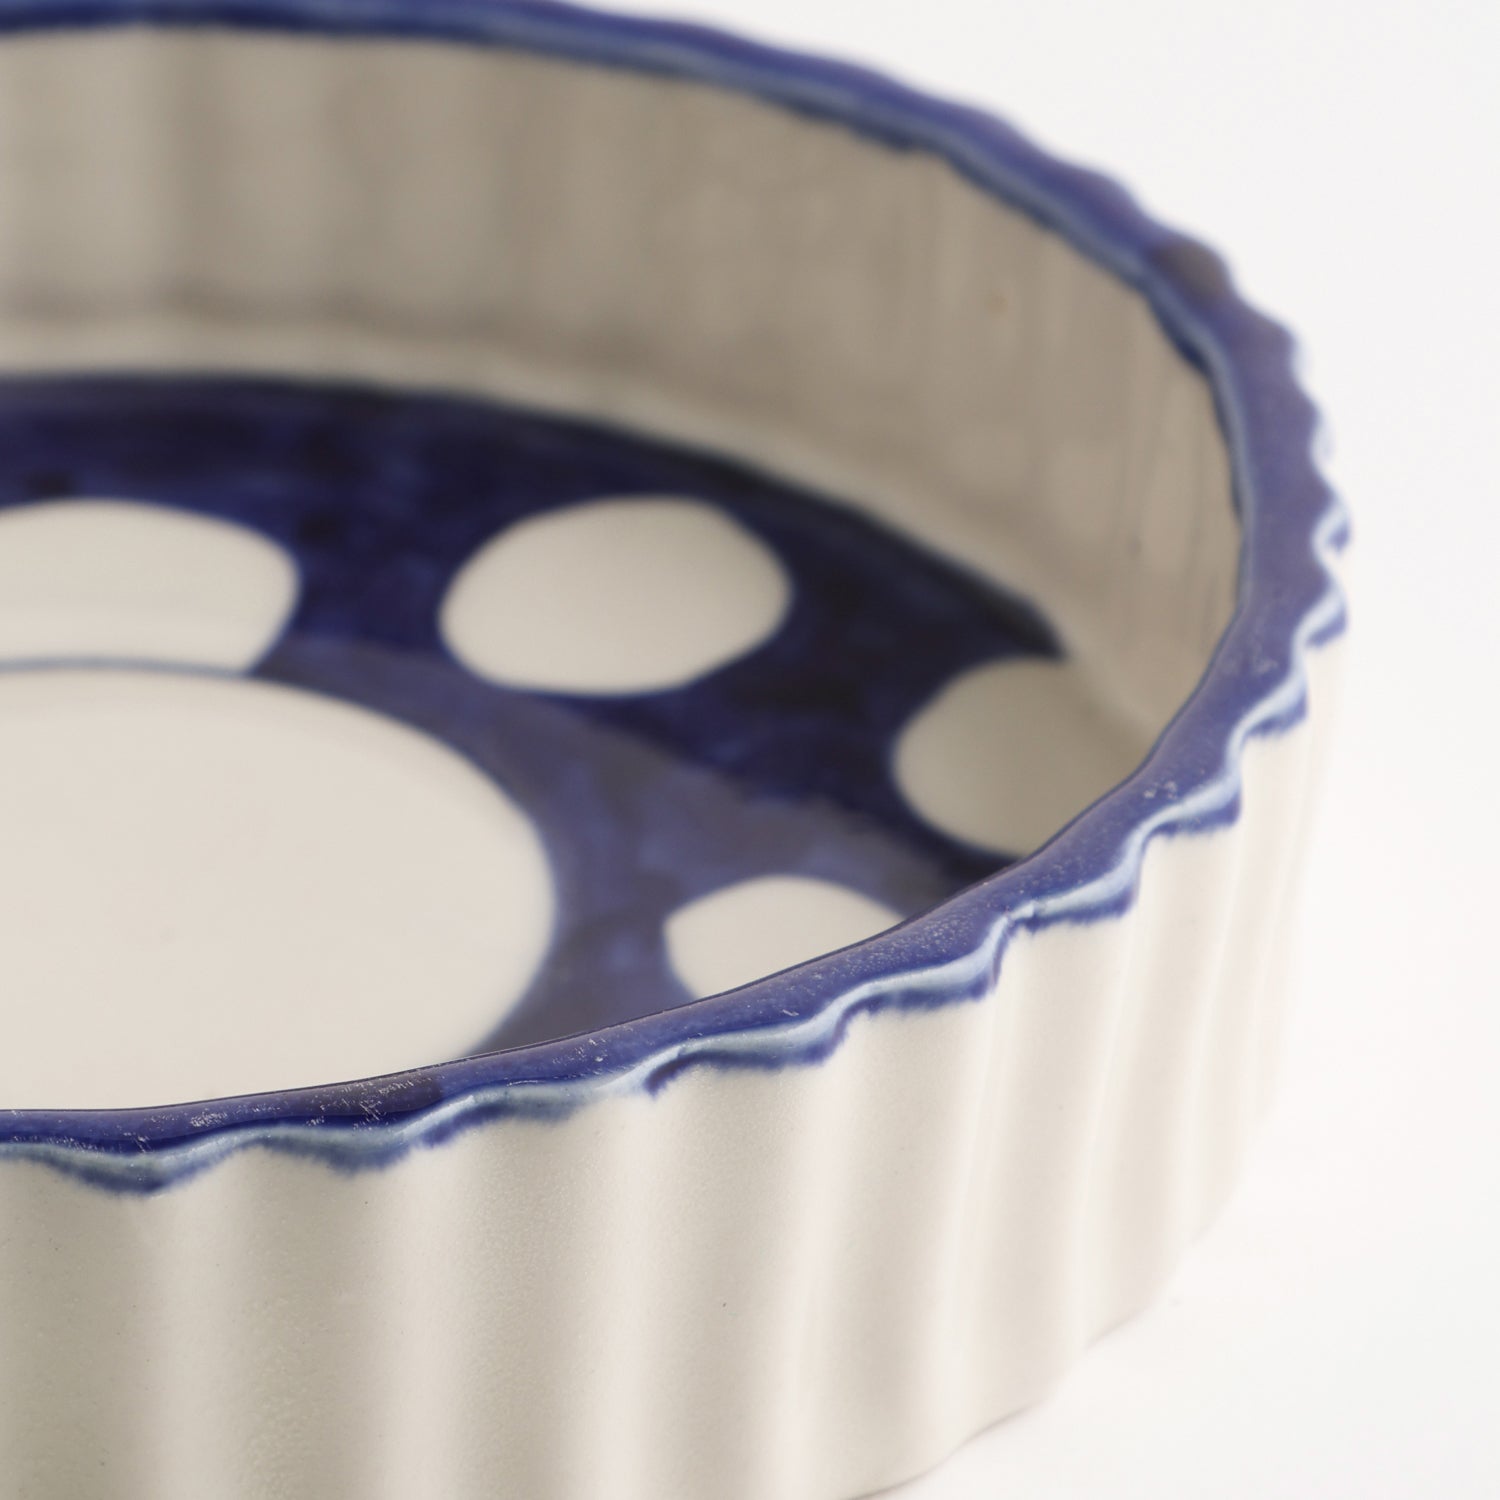 Ceramic Pie Plate - Bake & Serve -  8x8x2